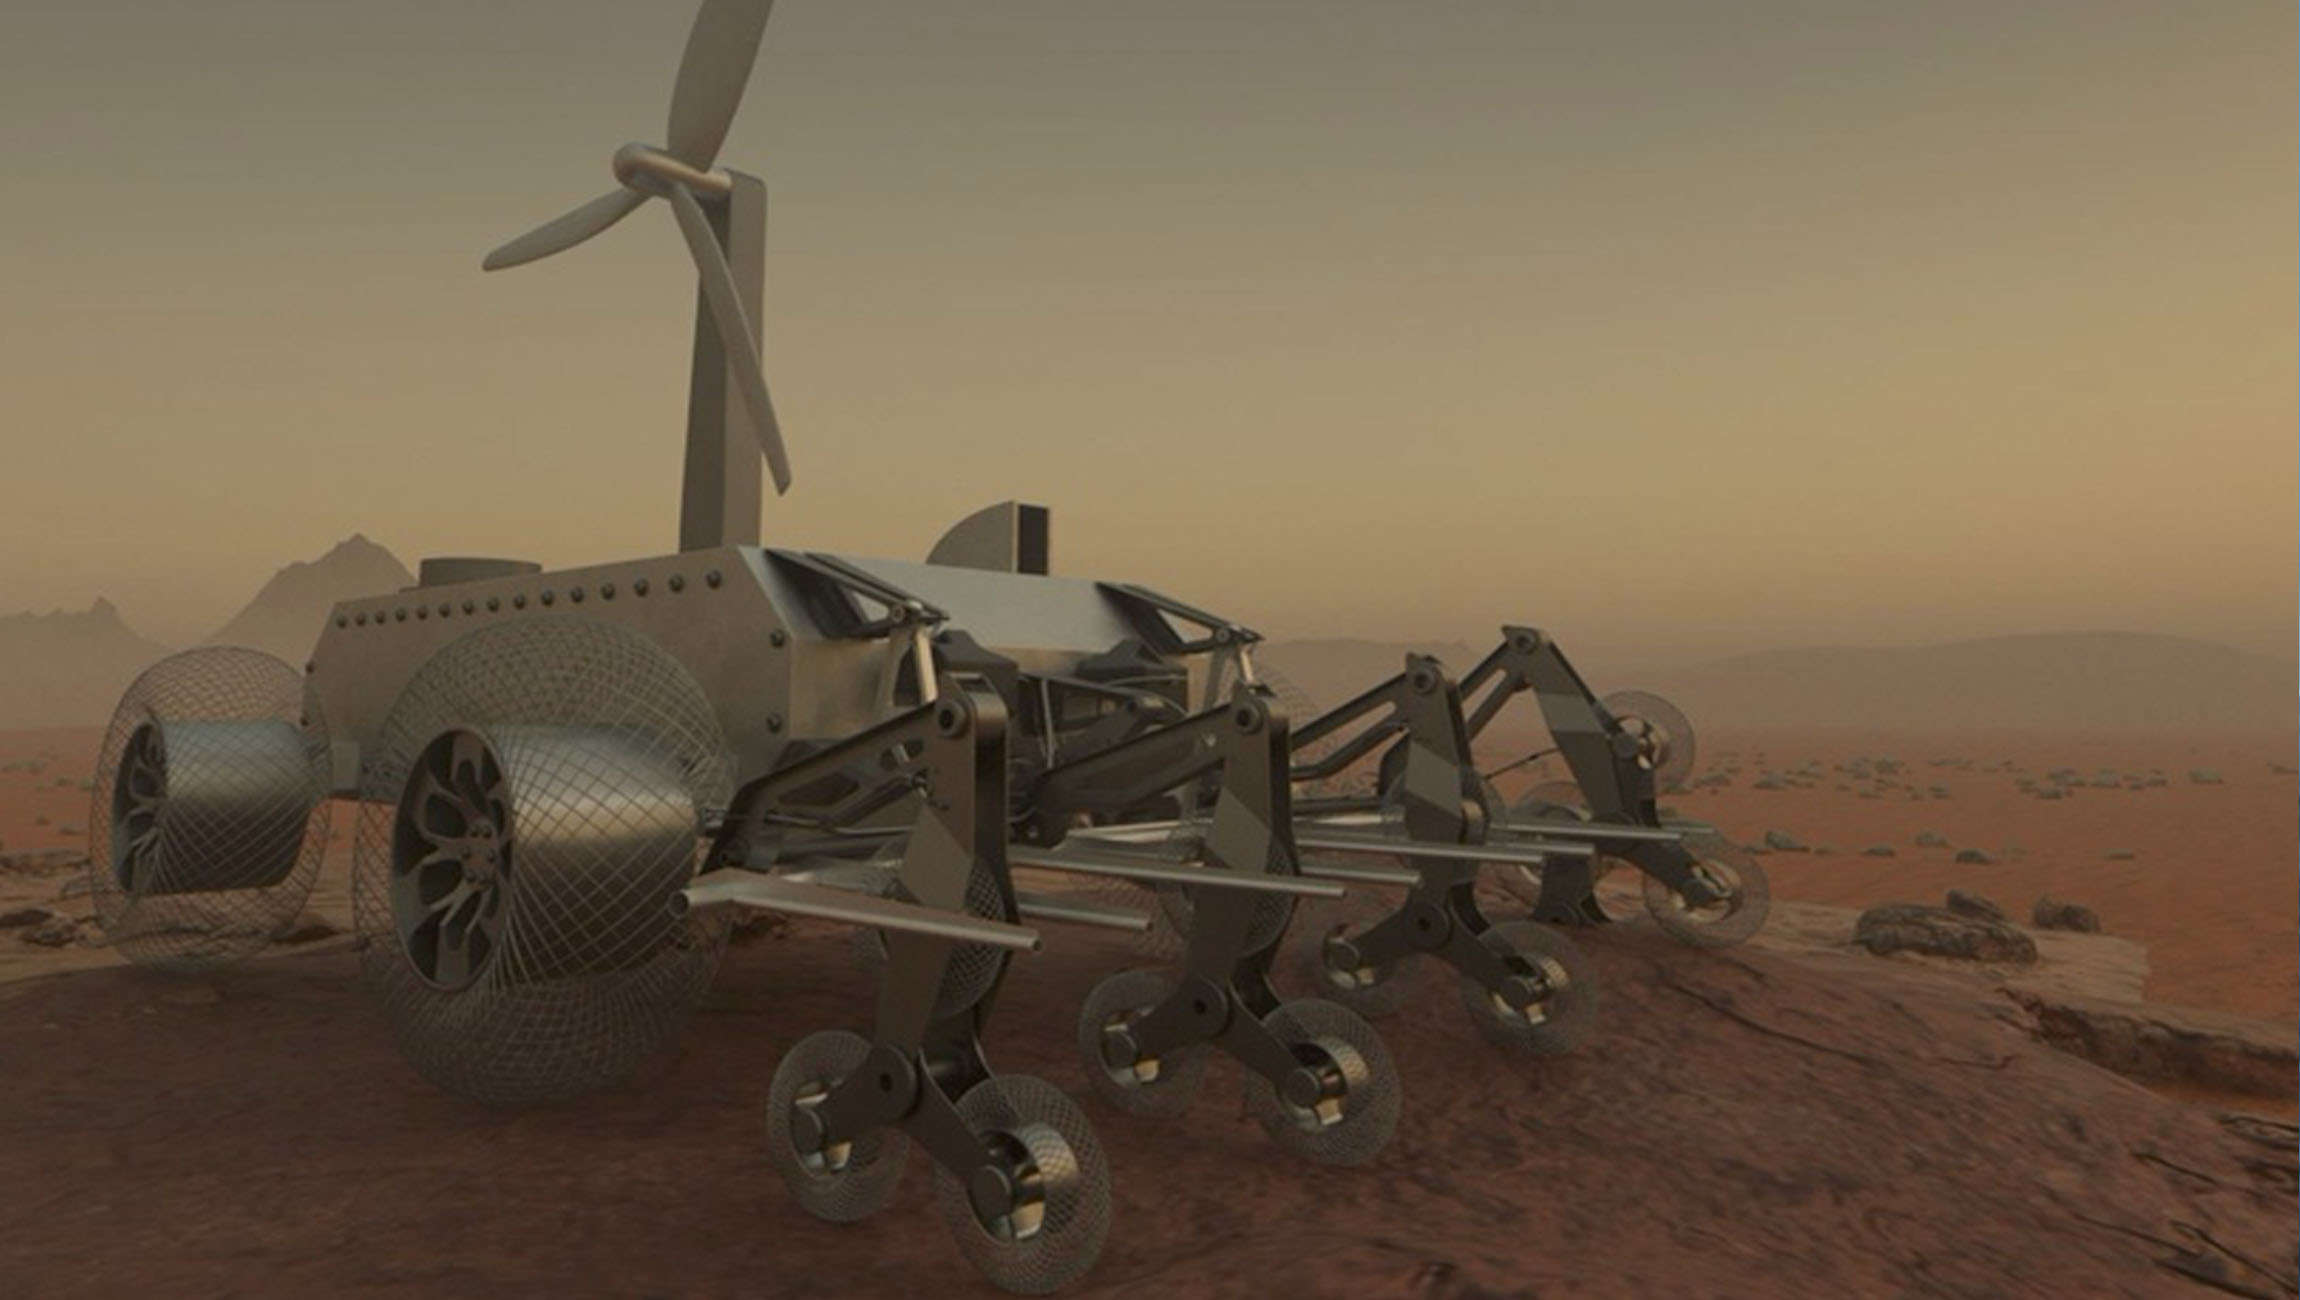 NASA Venus rover concept